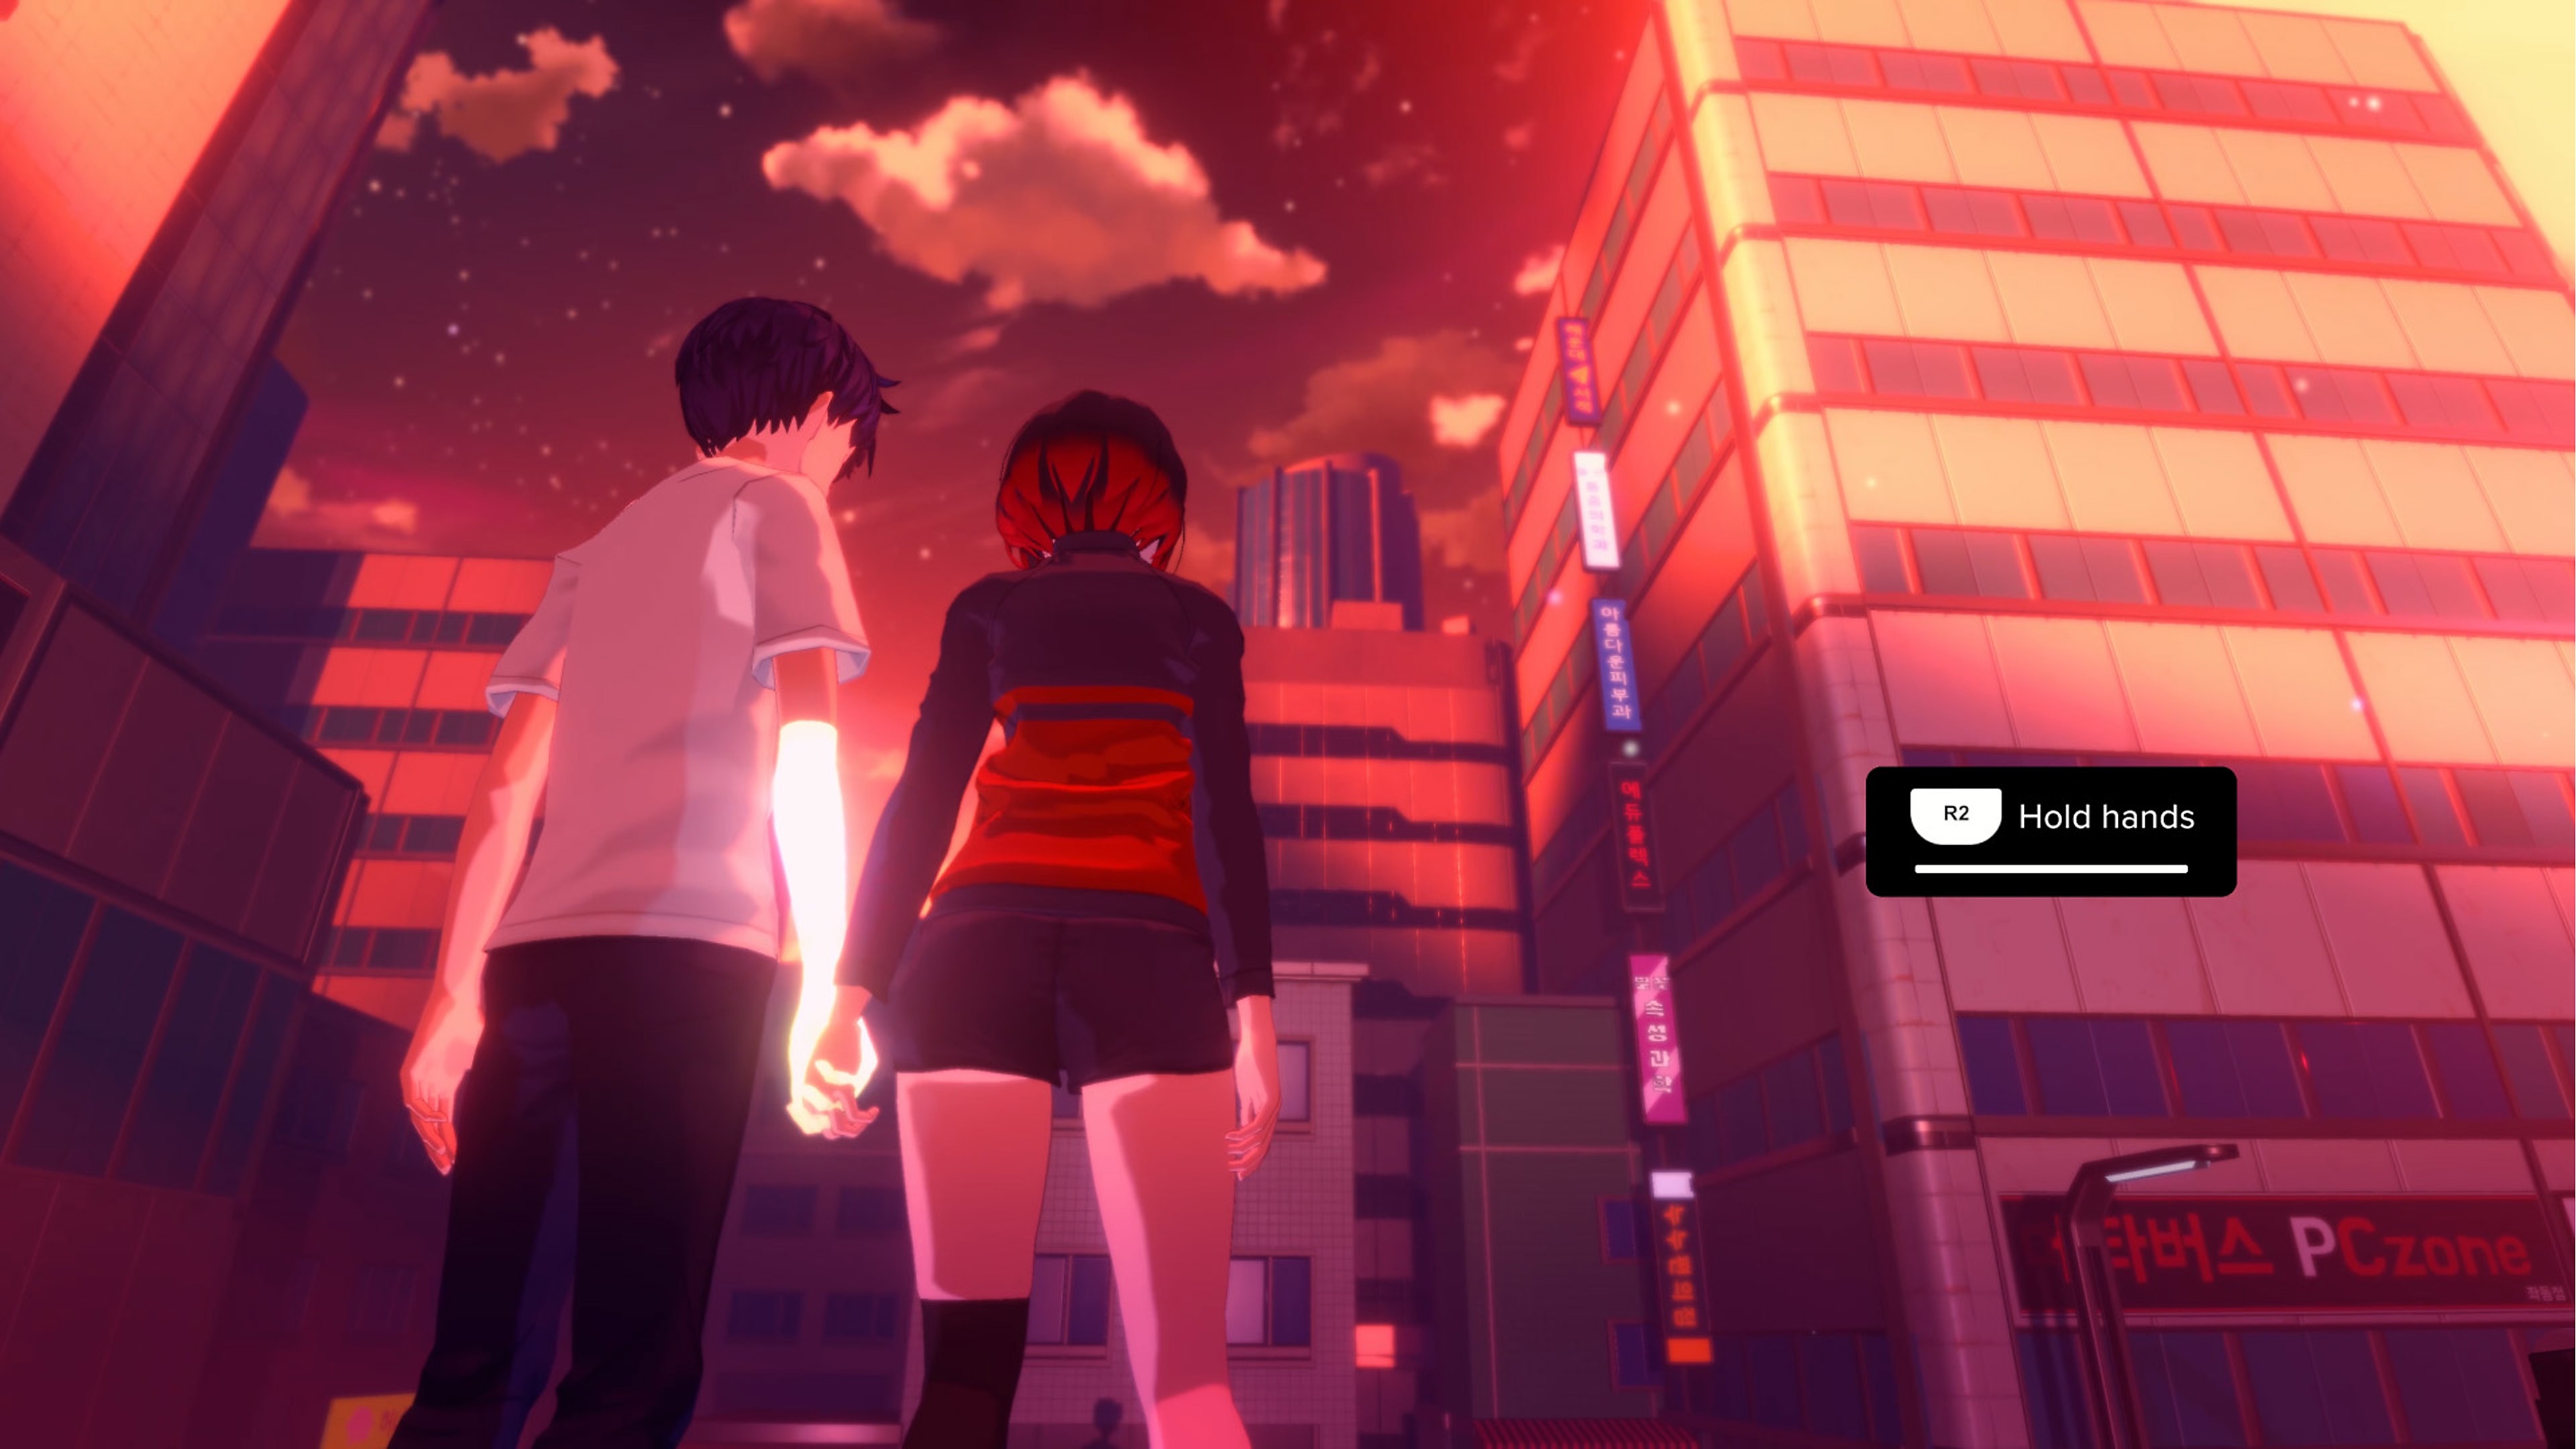 Eternights-képernyőkép, amelyen két középiskolás korú karakter kézen fogva áll egy város magas épületei előtt.